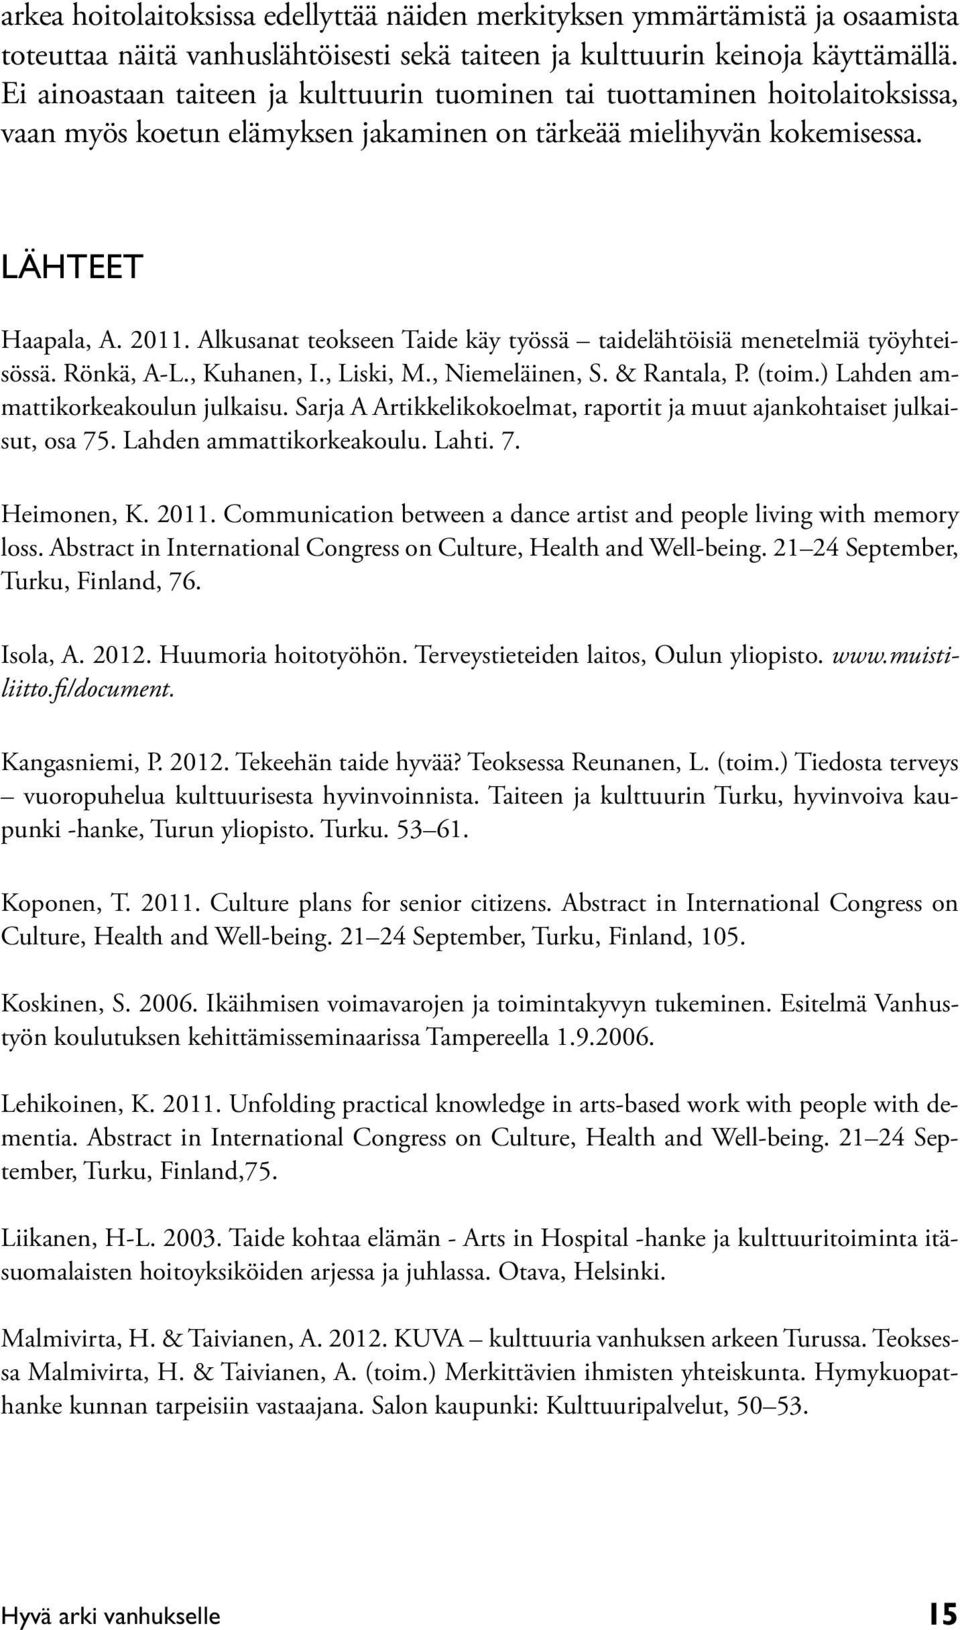 Alkusanat teokseen Taide käy työssä taidelähtöisiä menetelmiä työyhteisössä. Rönkä, A-L., Kuhanen, I., Liski, M., Niemeläinen, S. & Rantala, P. (toim.) Lahden ammattikorkeakoulun julkaisu.